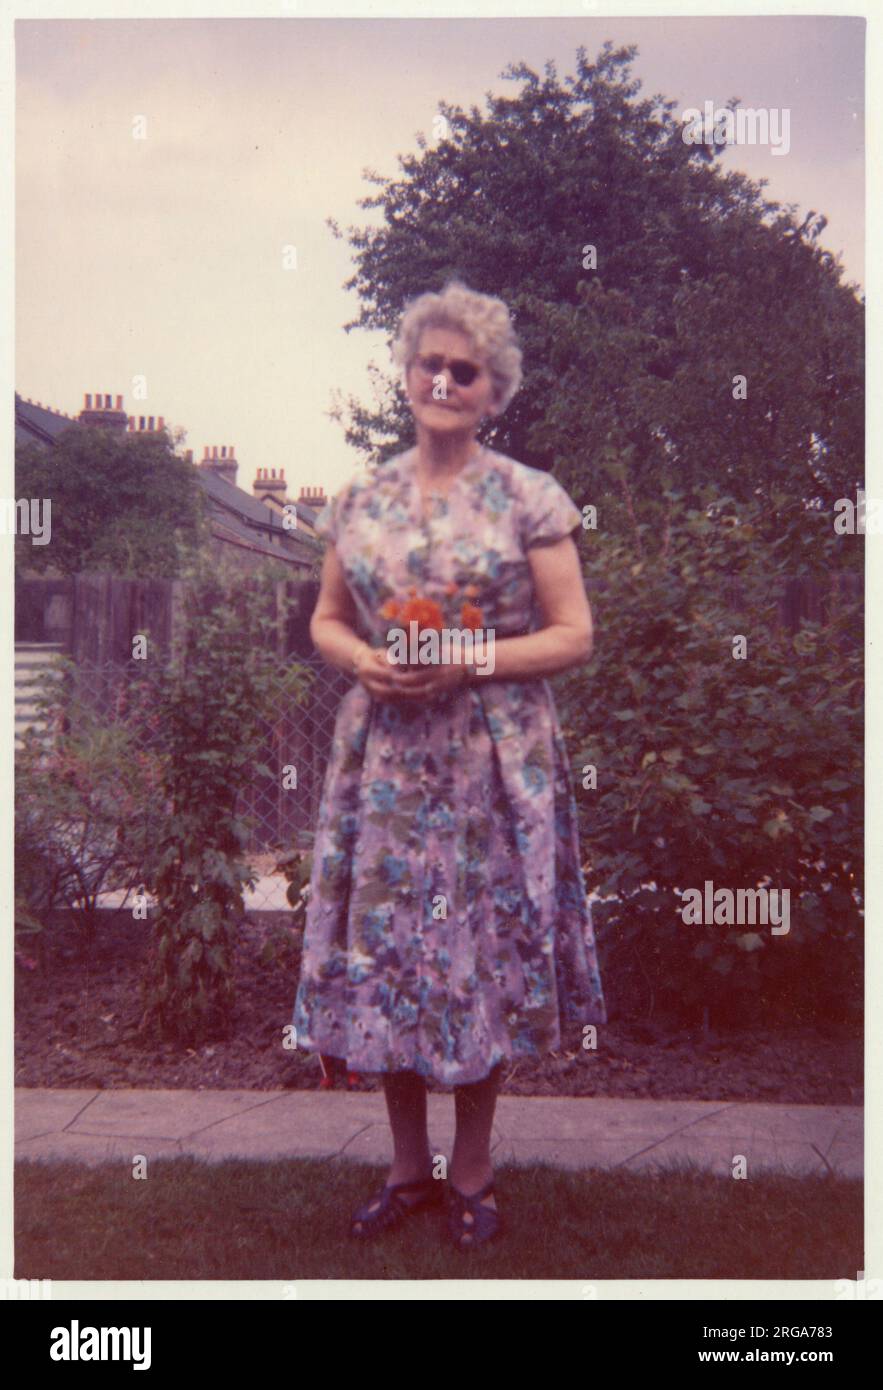 Une femme plus âgée, à l'état visuel réduit (avec un timbre oculaire), se baladant dans un jardin de banlieue soigné, tenant une posy de petites fleurs rouges - juillet 1961 Banque D'Images